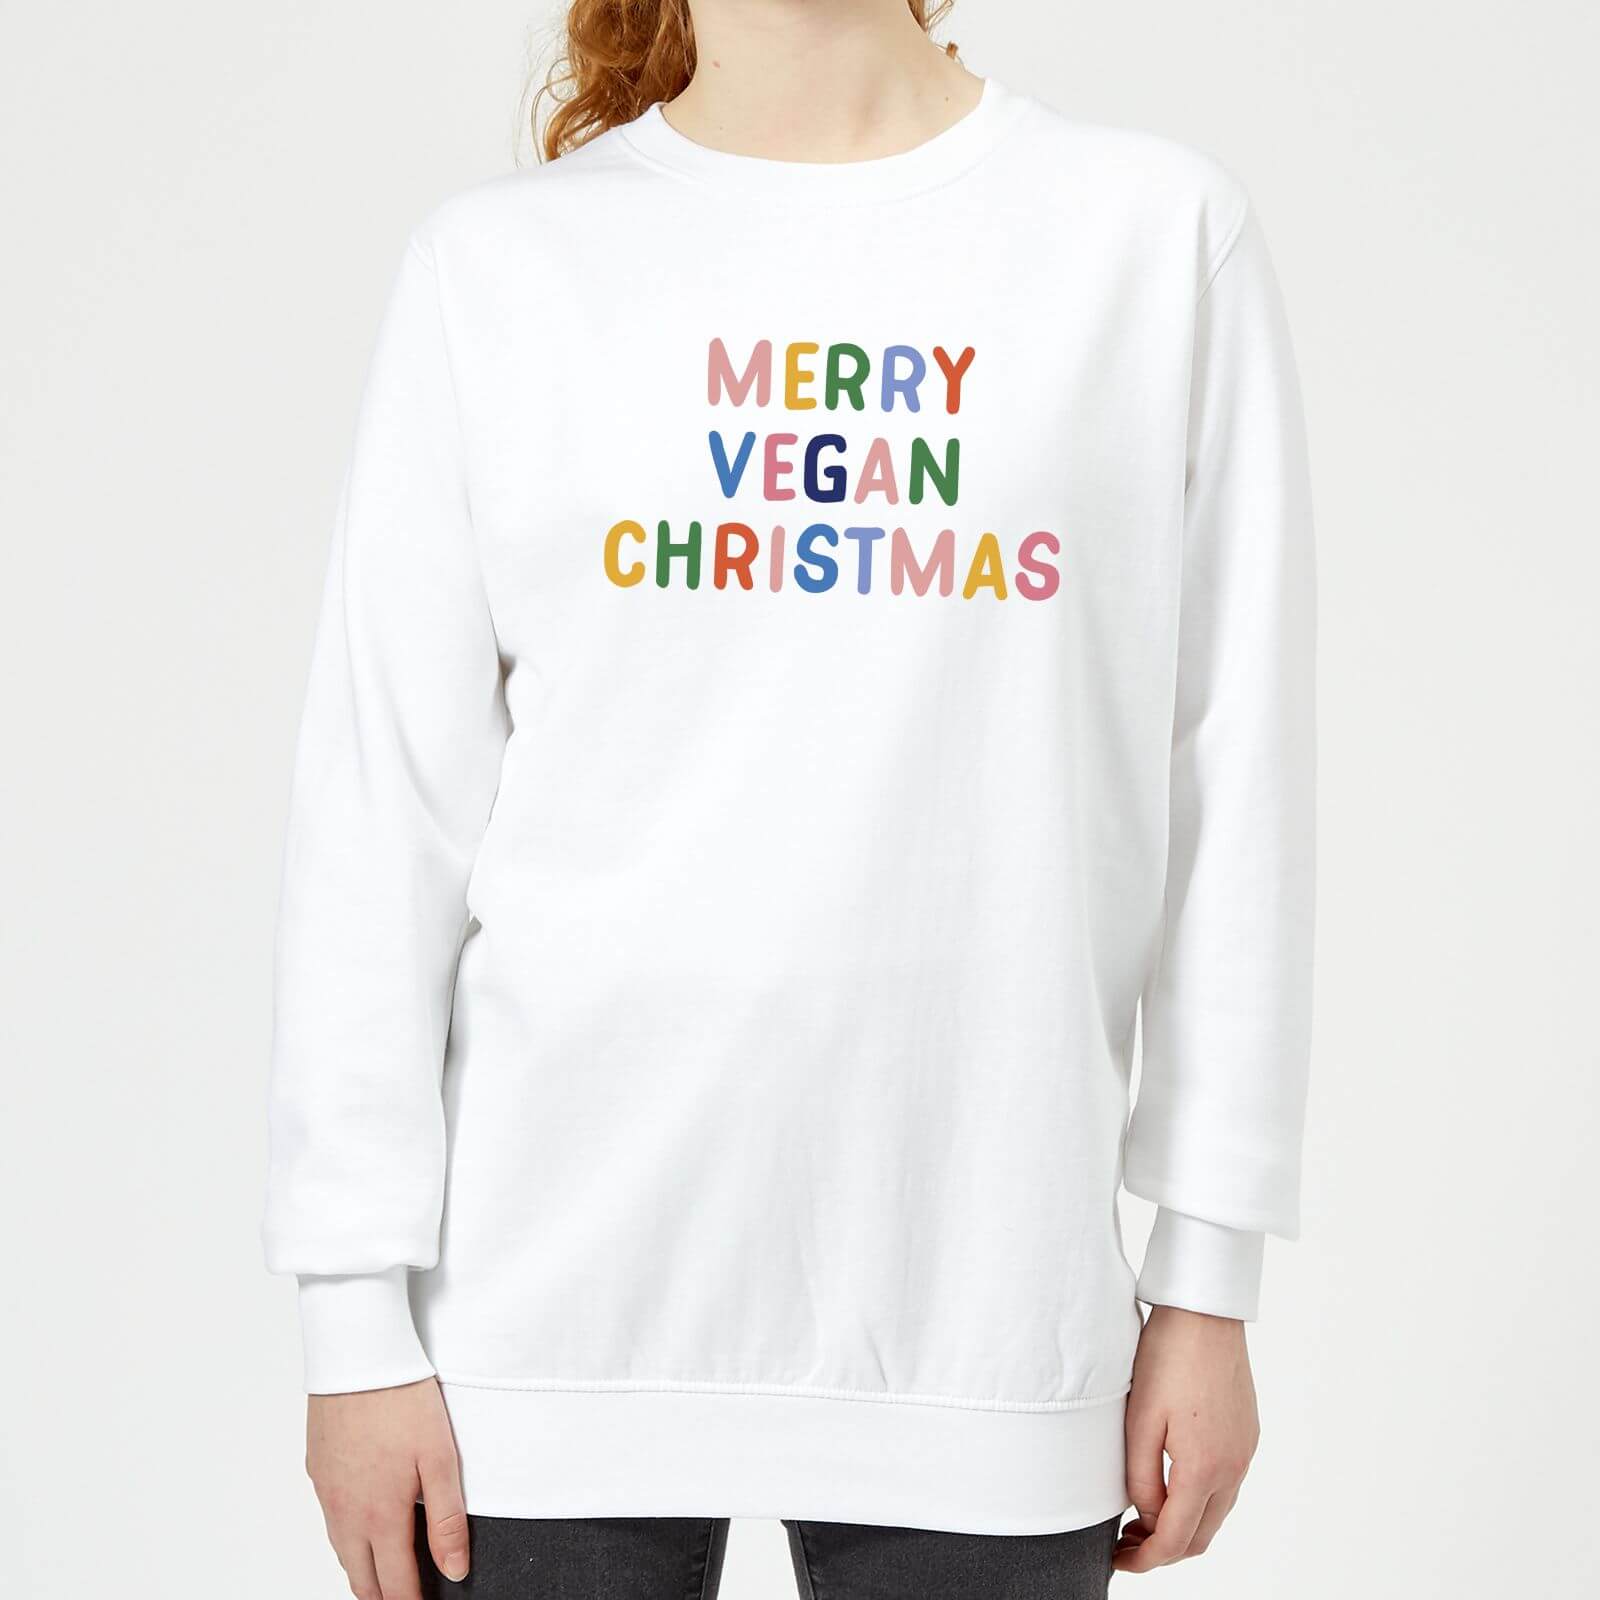 Merry Vegan Christmas Women's Christmas Sweatshirt - White - S - White